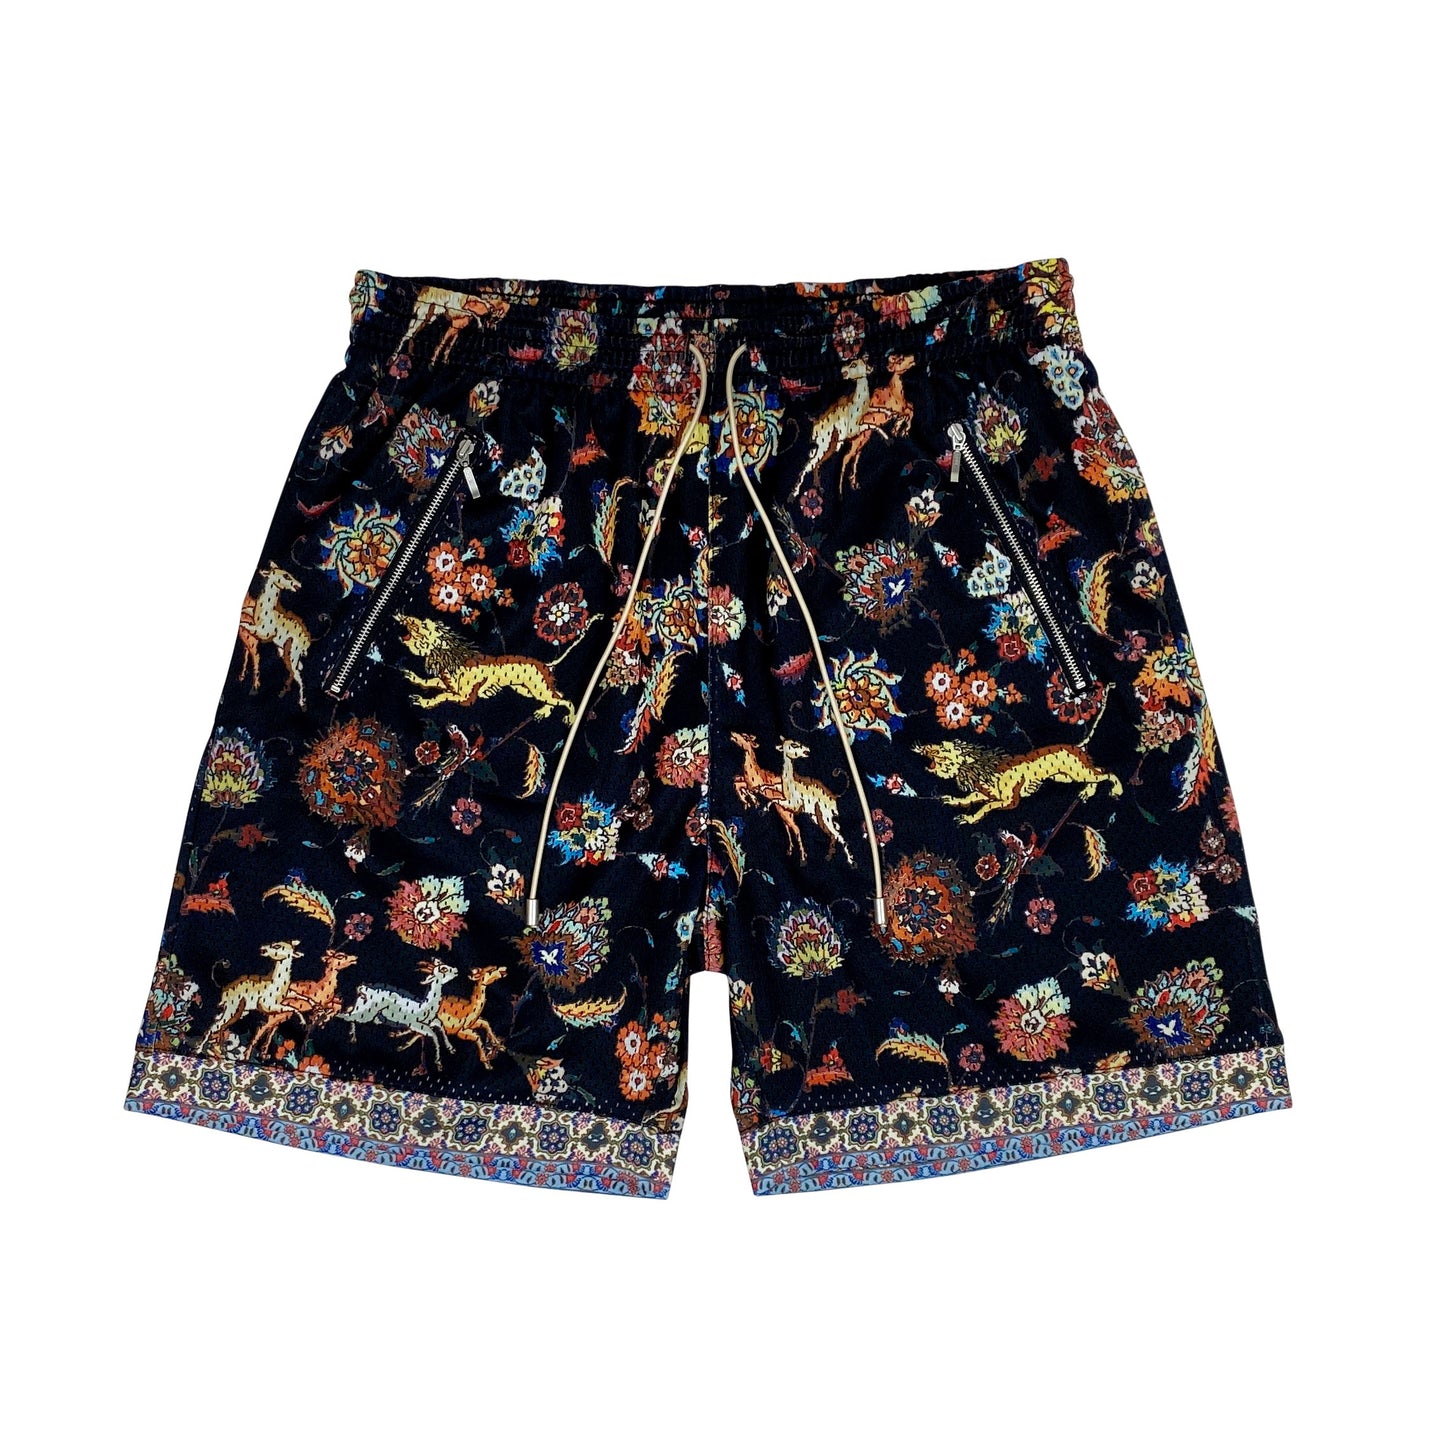 Bled-Bled Los Angeles-Persian Shorts-Mesh Shorts-Persia Shorts-Iran Shorts-Shiraz Shorts-Iran Clothing-Persian Clothing